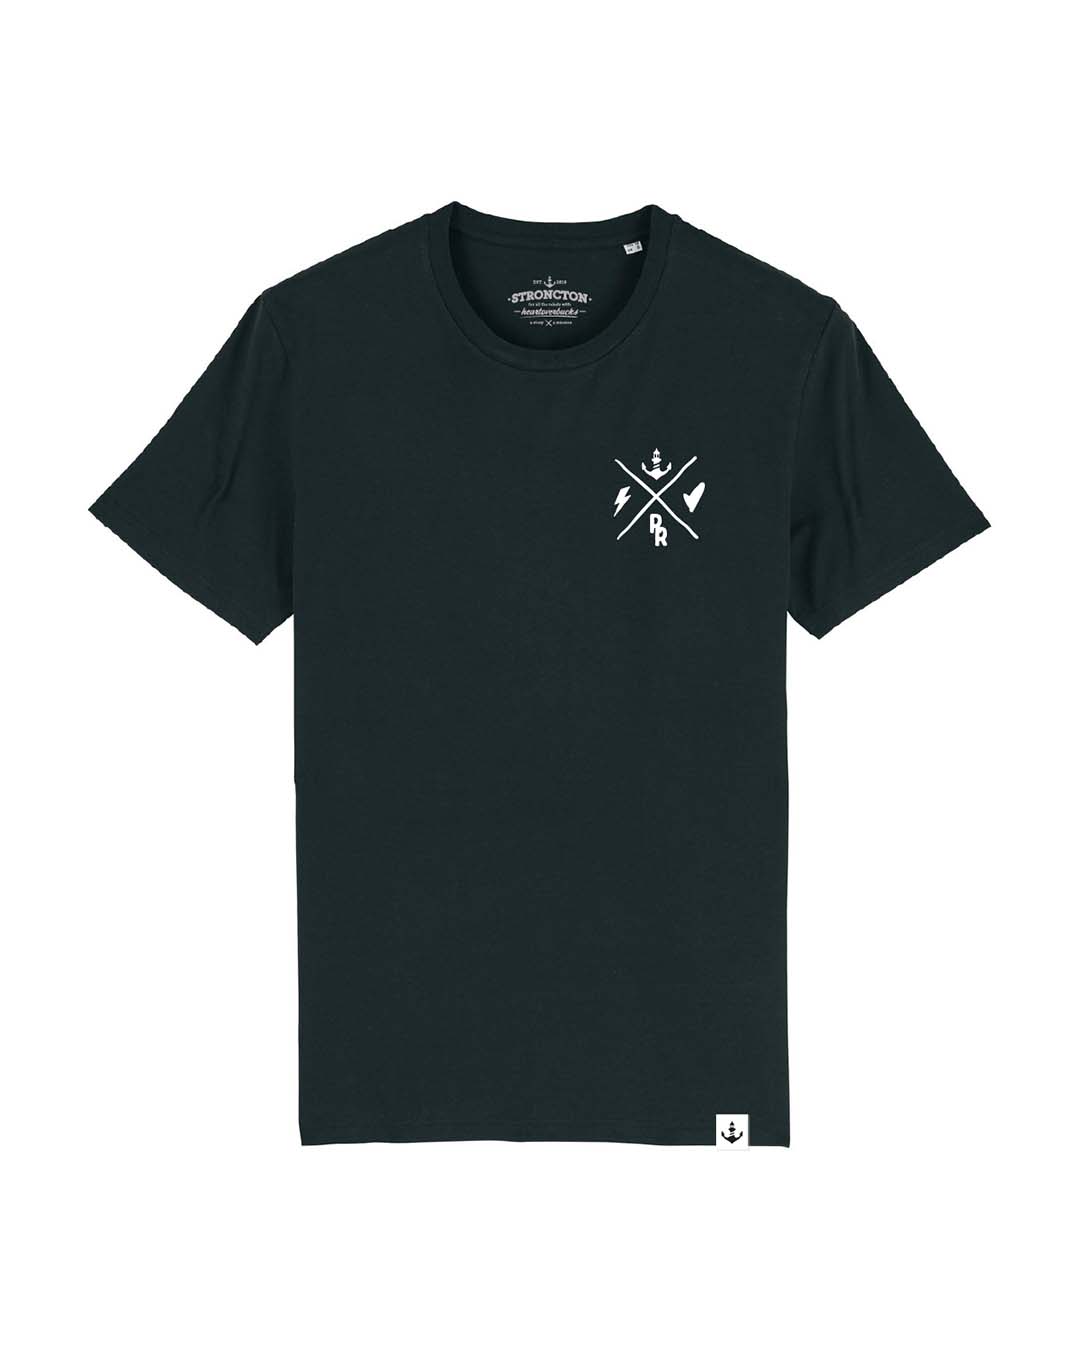 R x R Unisex T-Shirt - Black